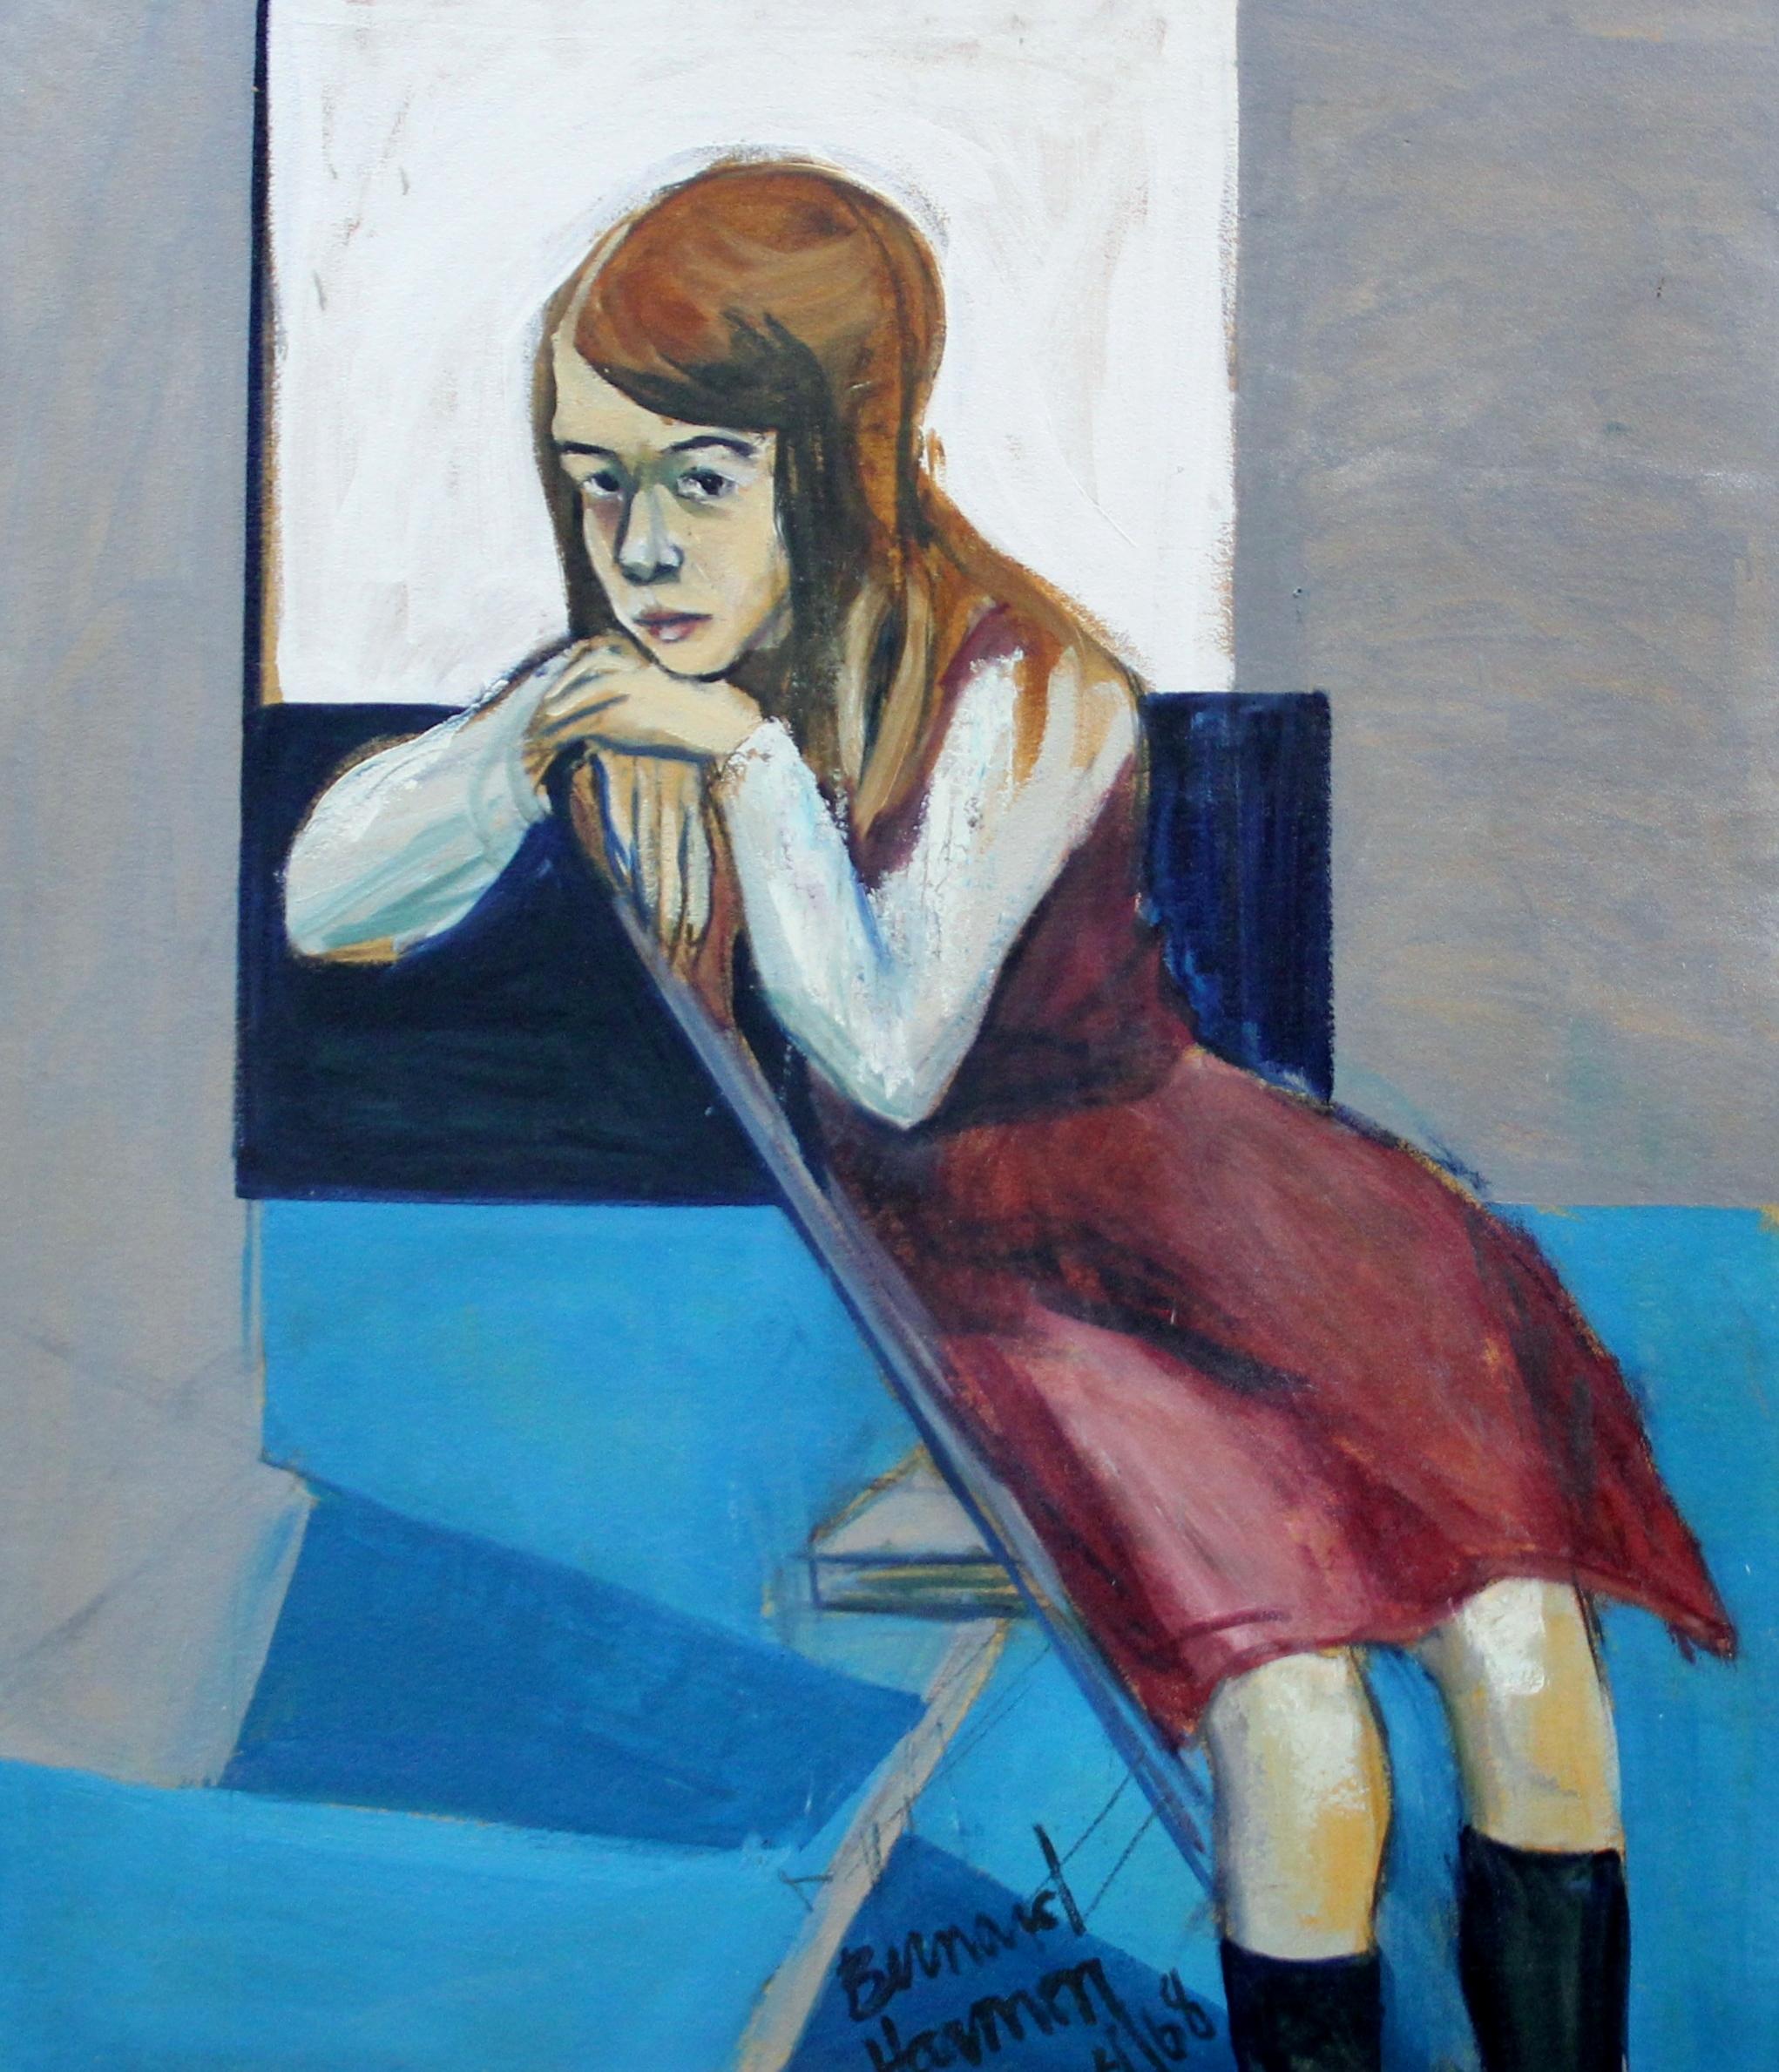 School Girl, Expressionistisches Porträt des Künstlers aus Philadelphia